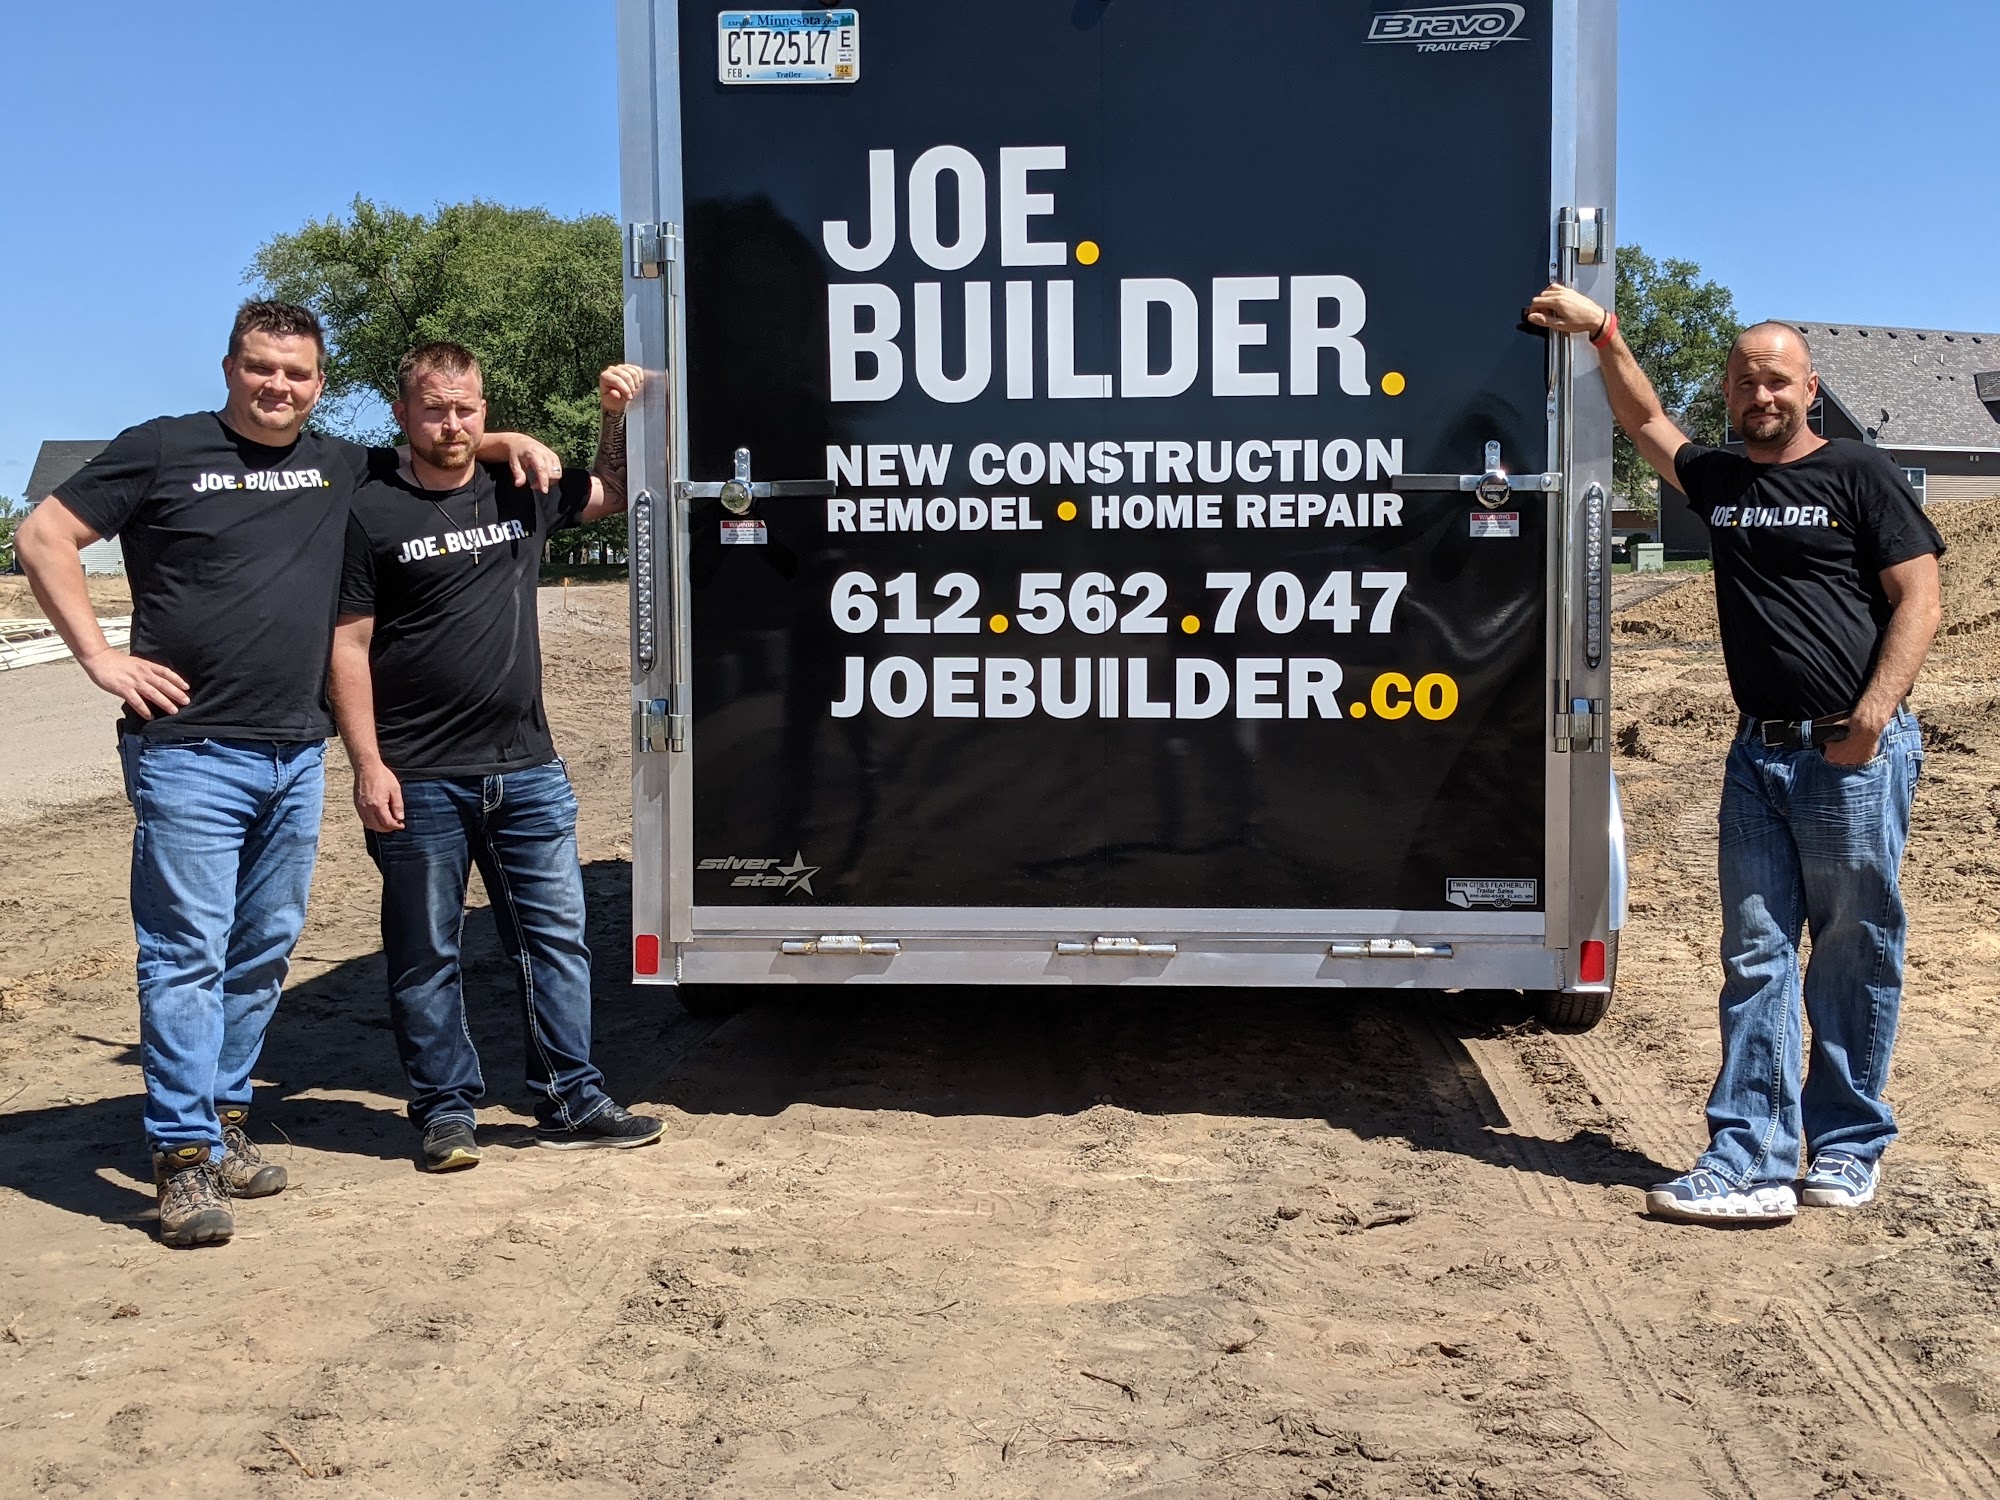 Joe Builder